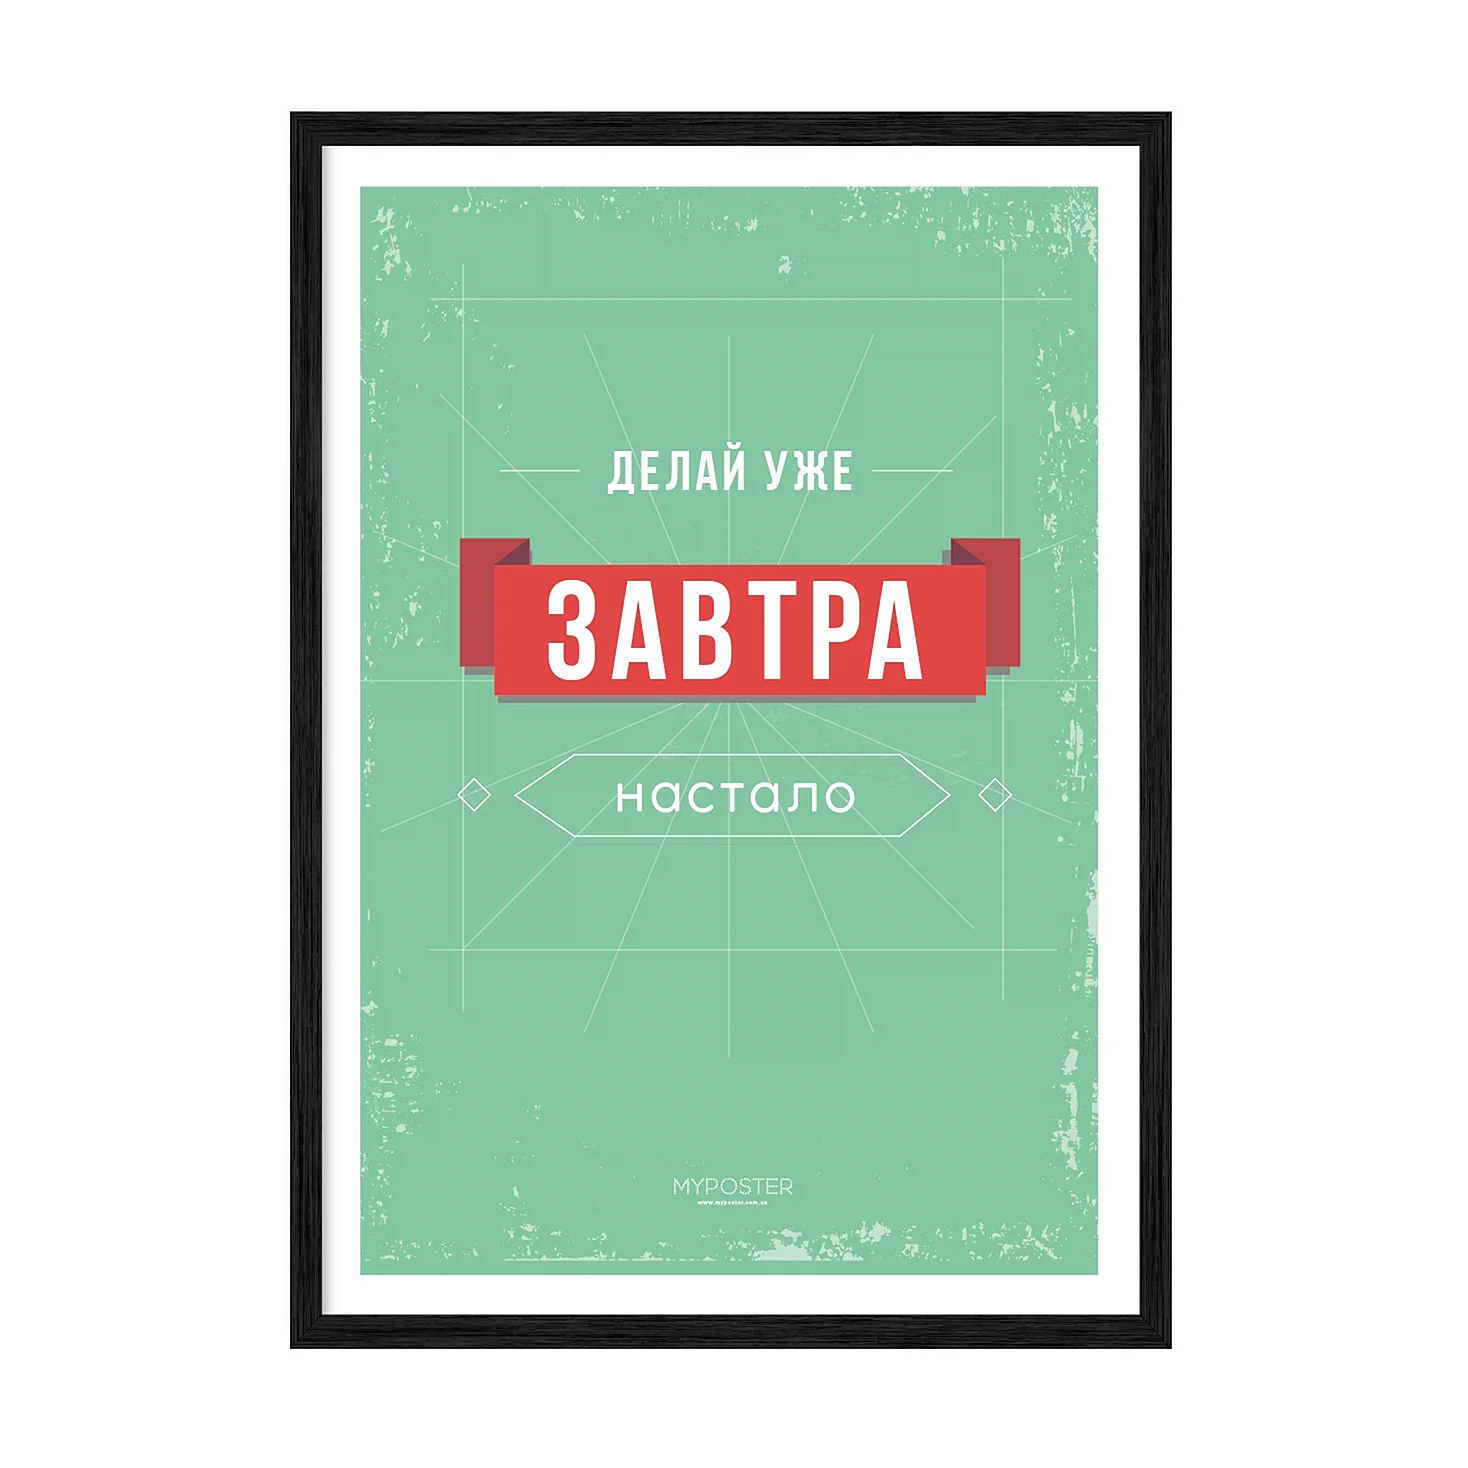 Мотивирующие плакаты Батырев